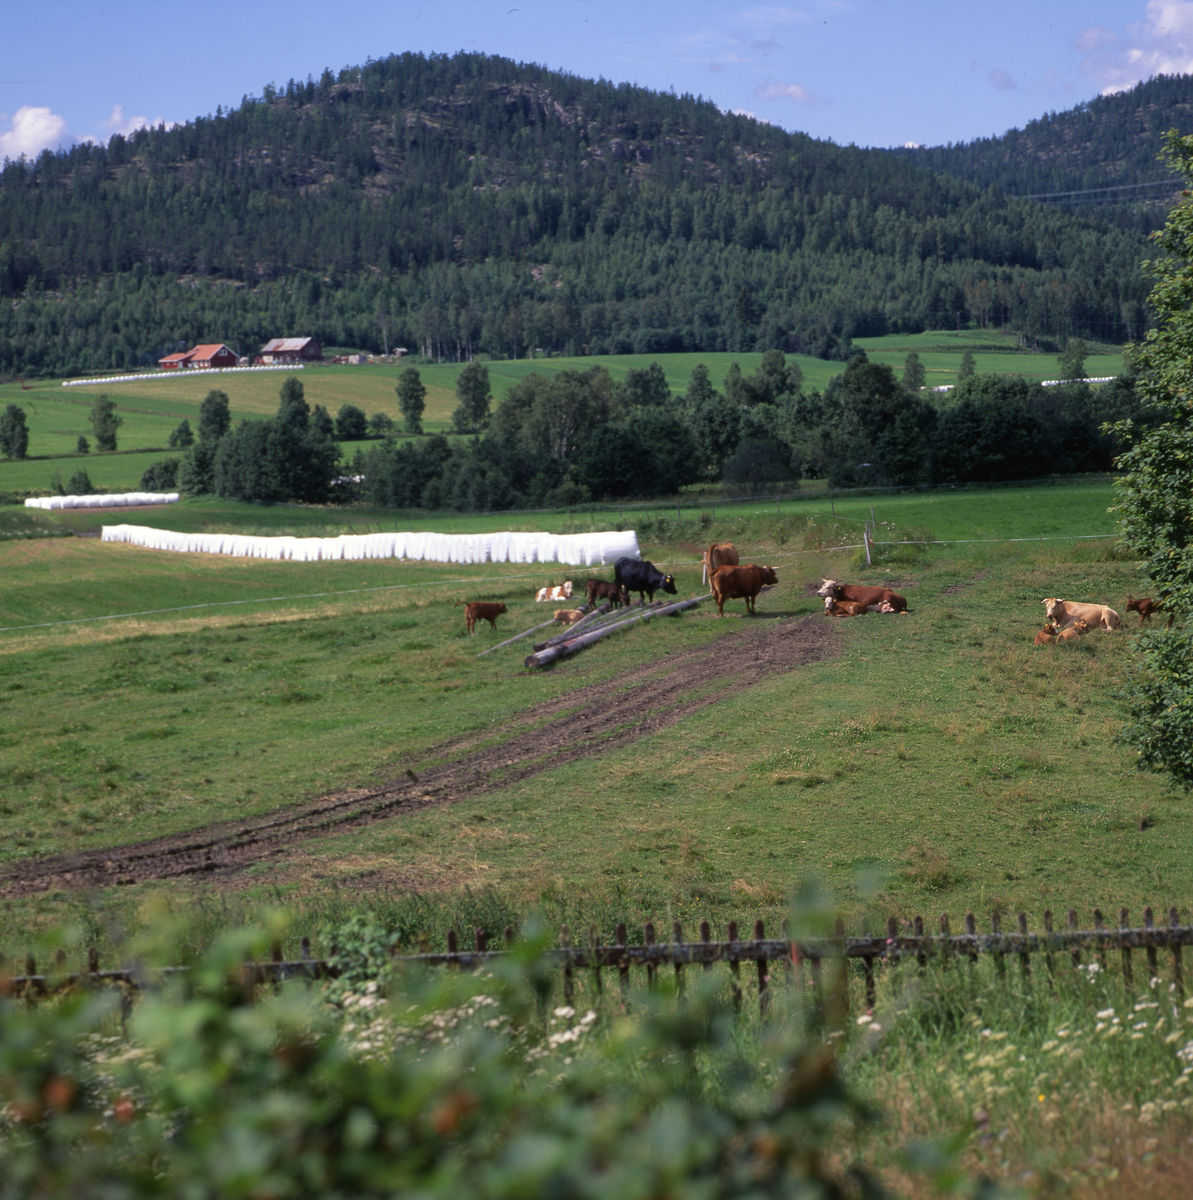 Ängsmark med kor och ensilagebalar. I marken syns spår efter en traktor. I bakgrunden står ett stort berg med tät skog.